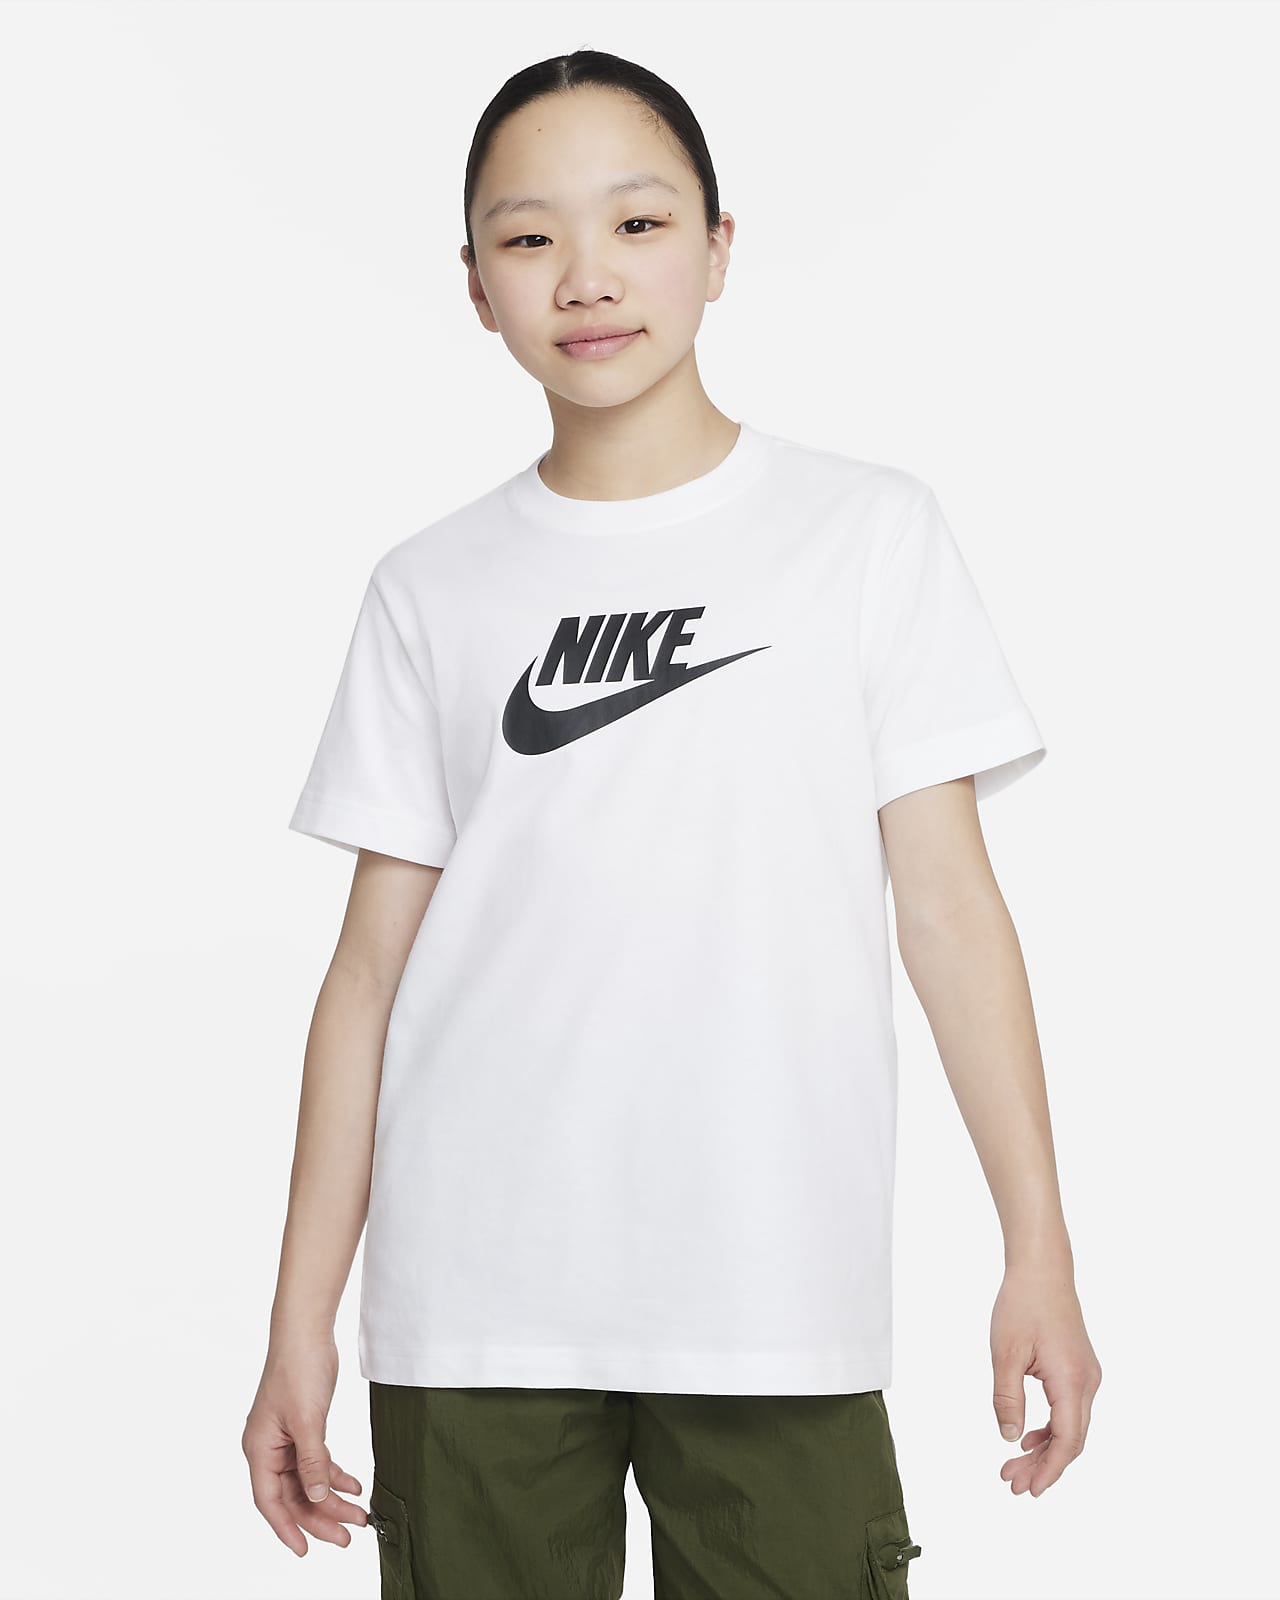 NIKE公式】ナイキ スポーツウェア ジュニア (ガールズ) Tシャツ